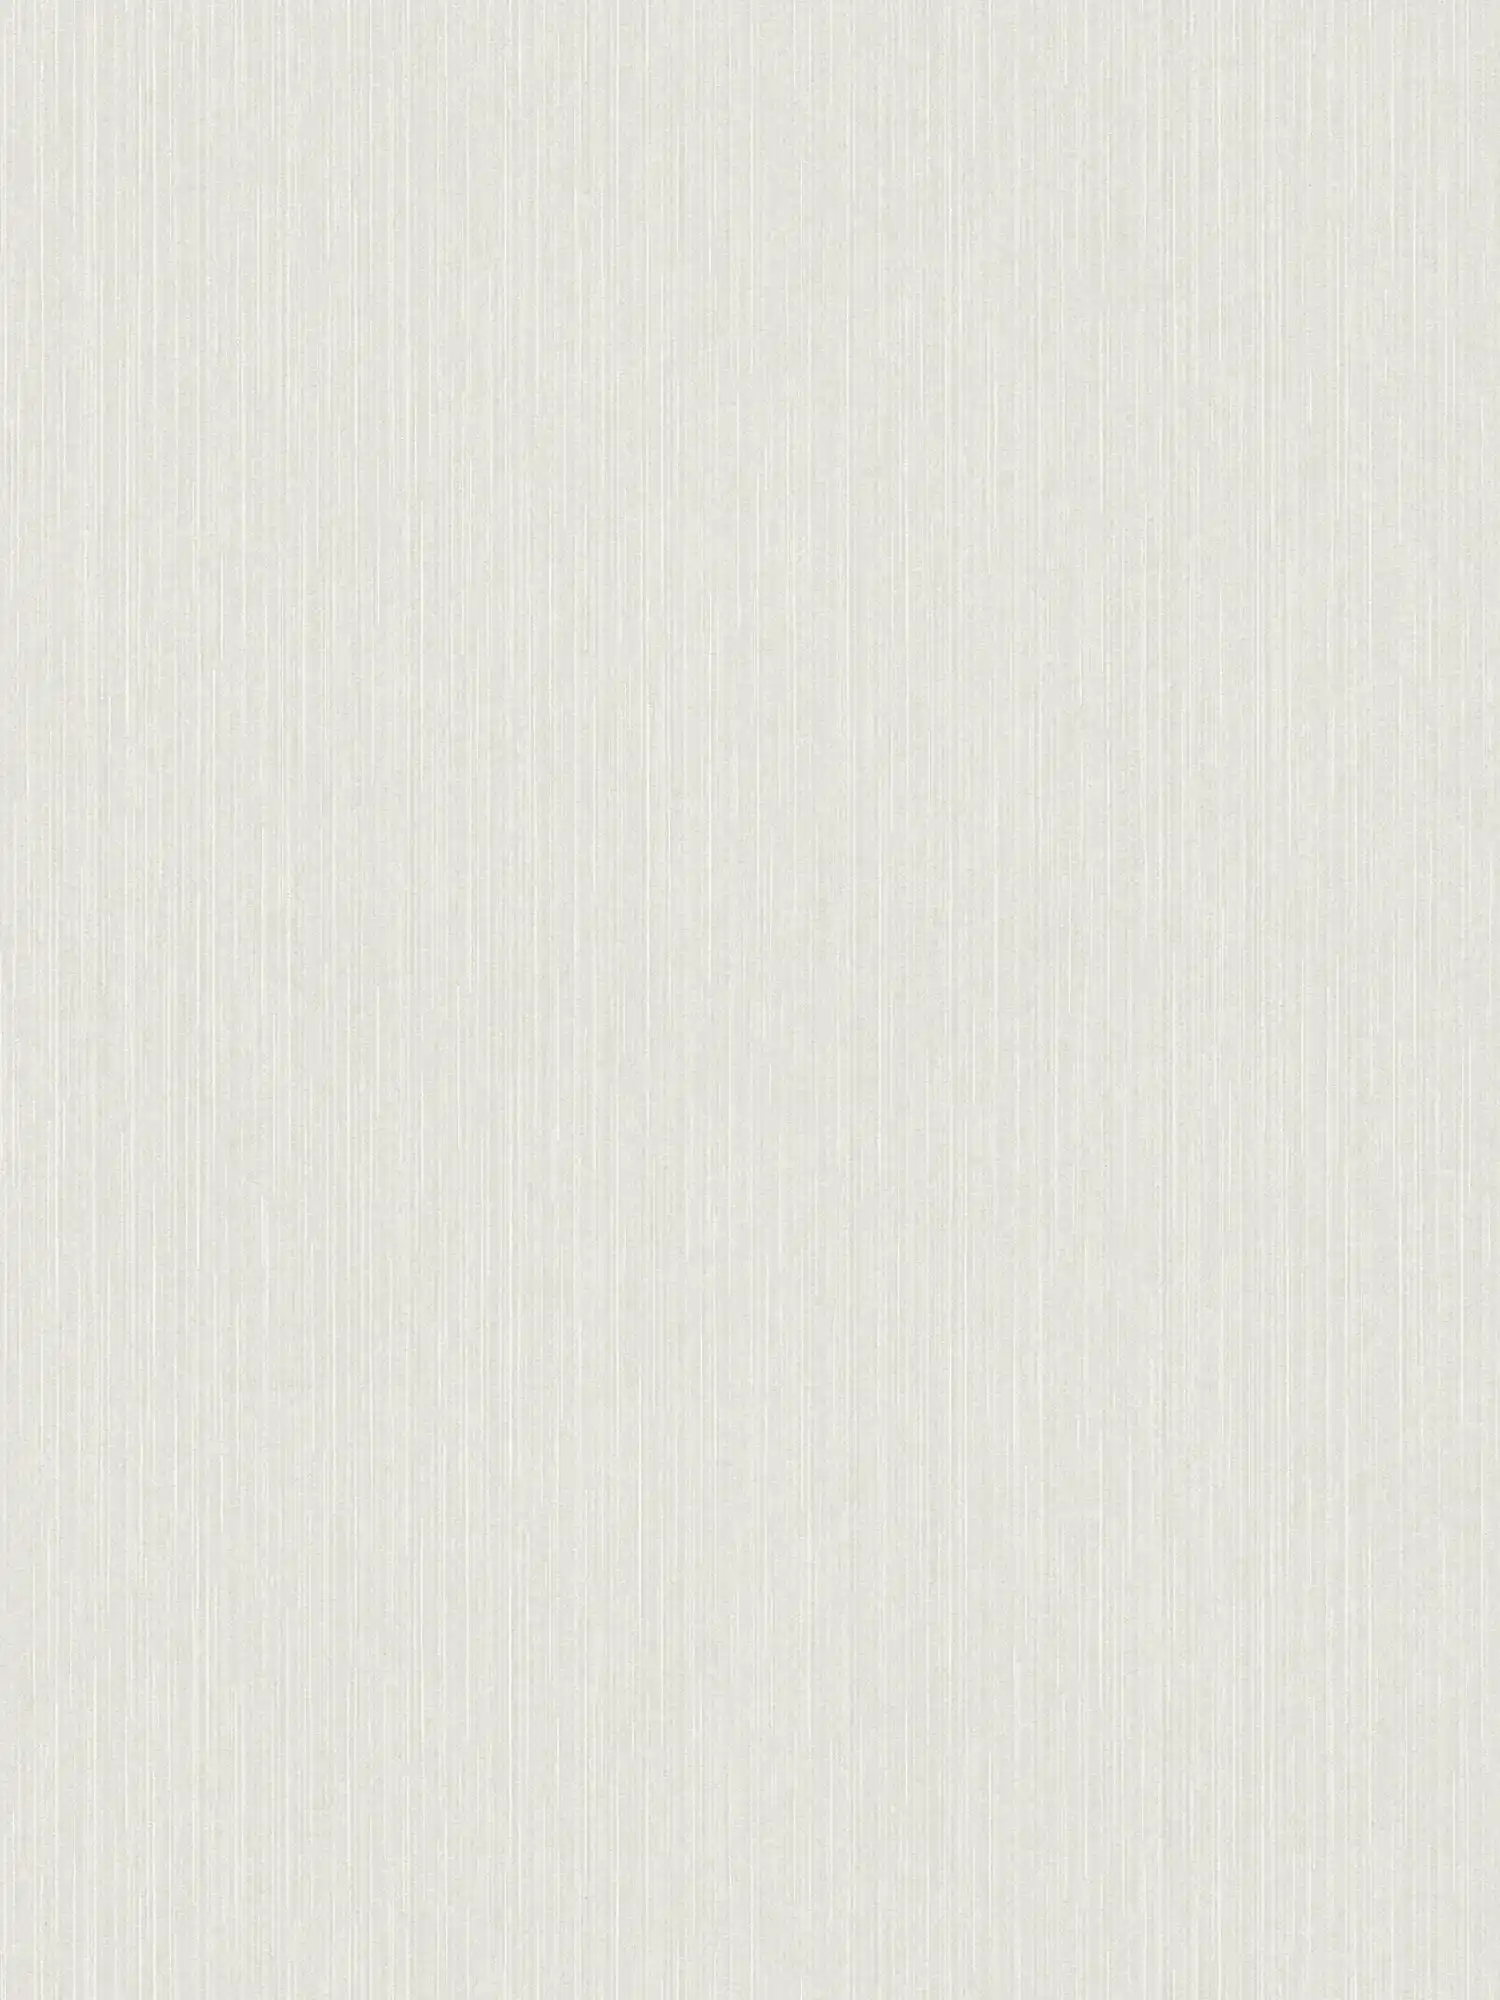 White non-woven wallpaper with glitter effect & line design - white, grey
